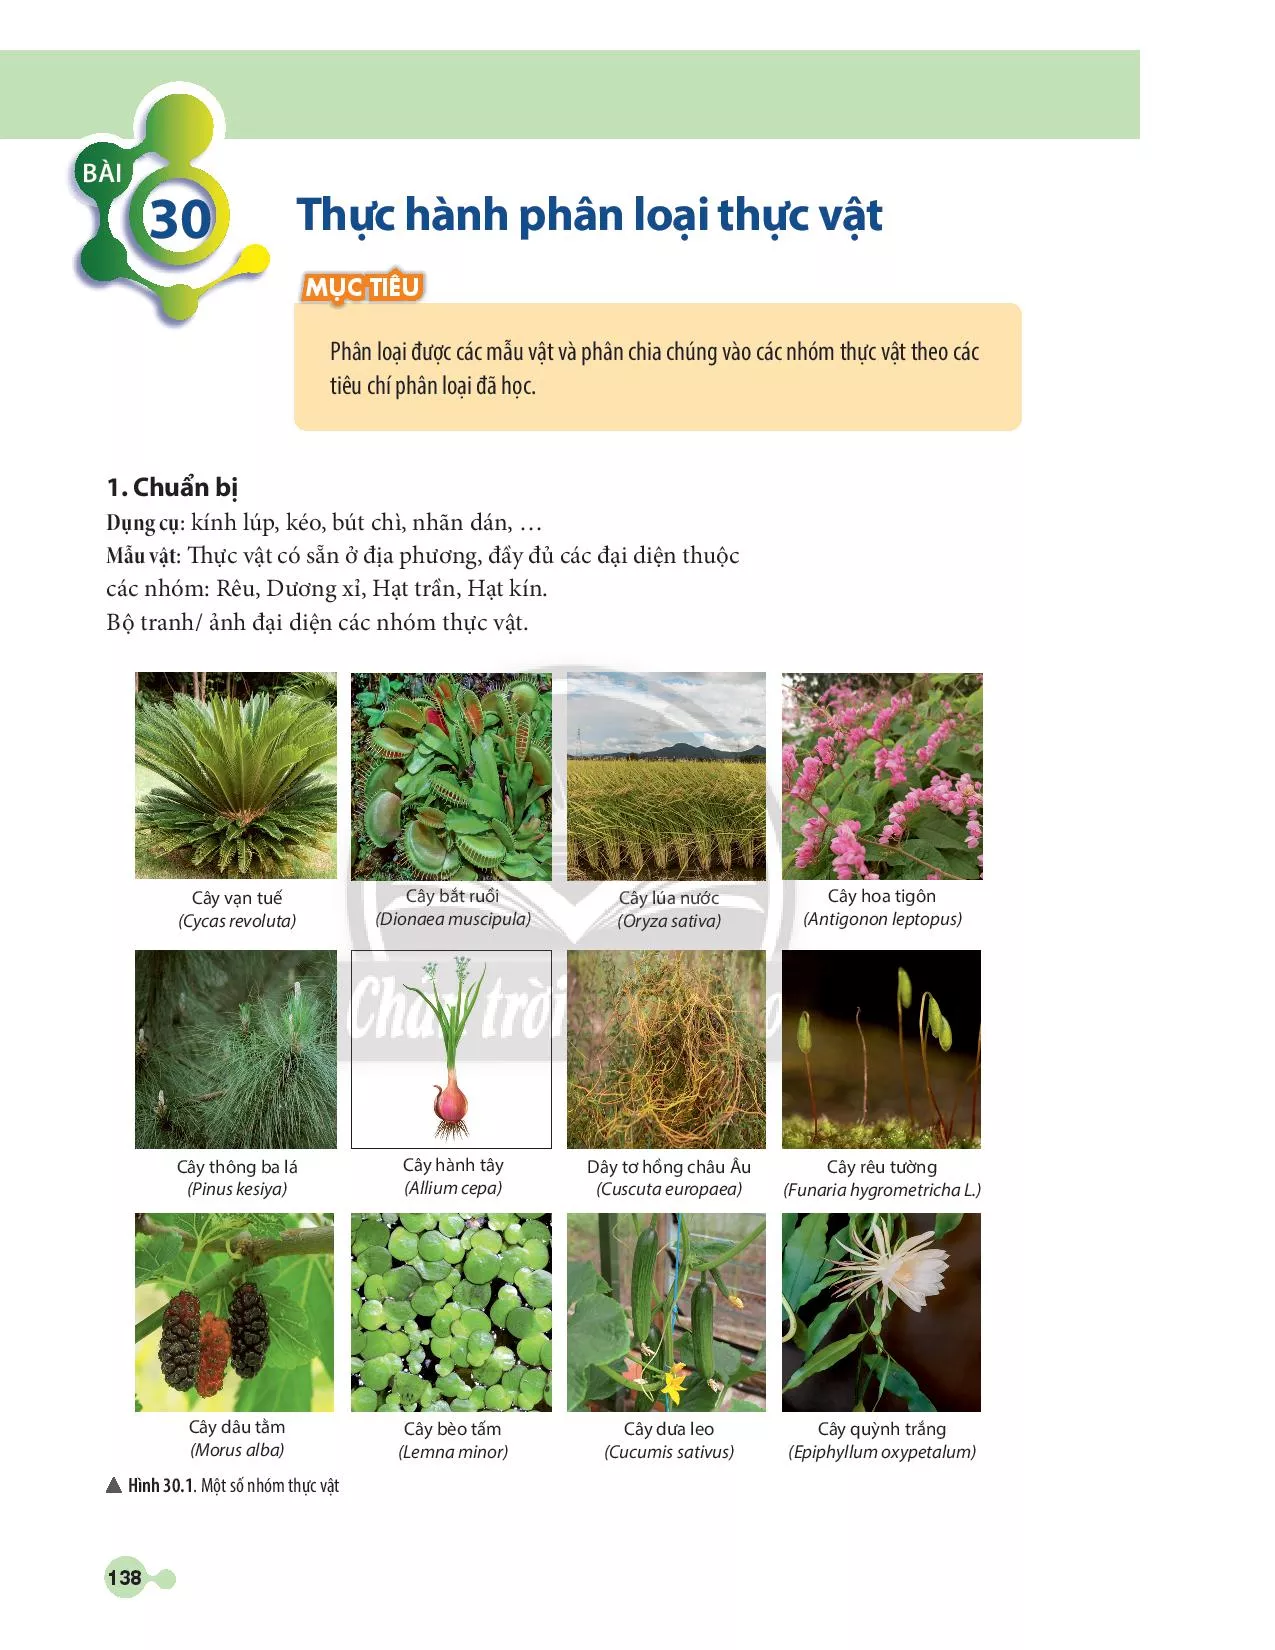 BÀI 30: Thực hành phân loại thực vật